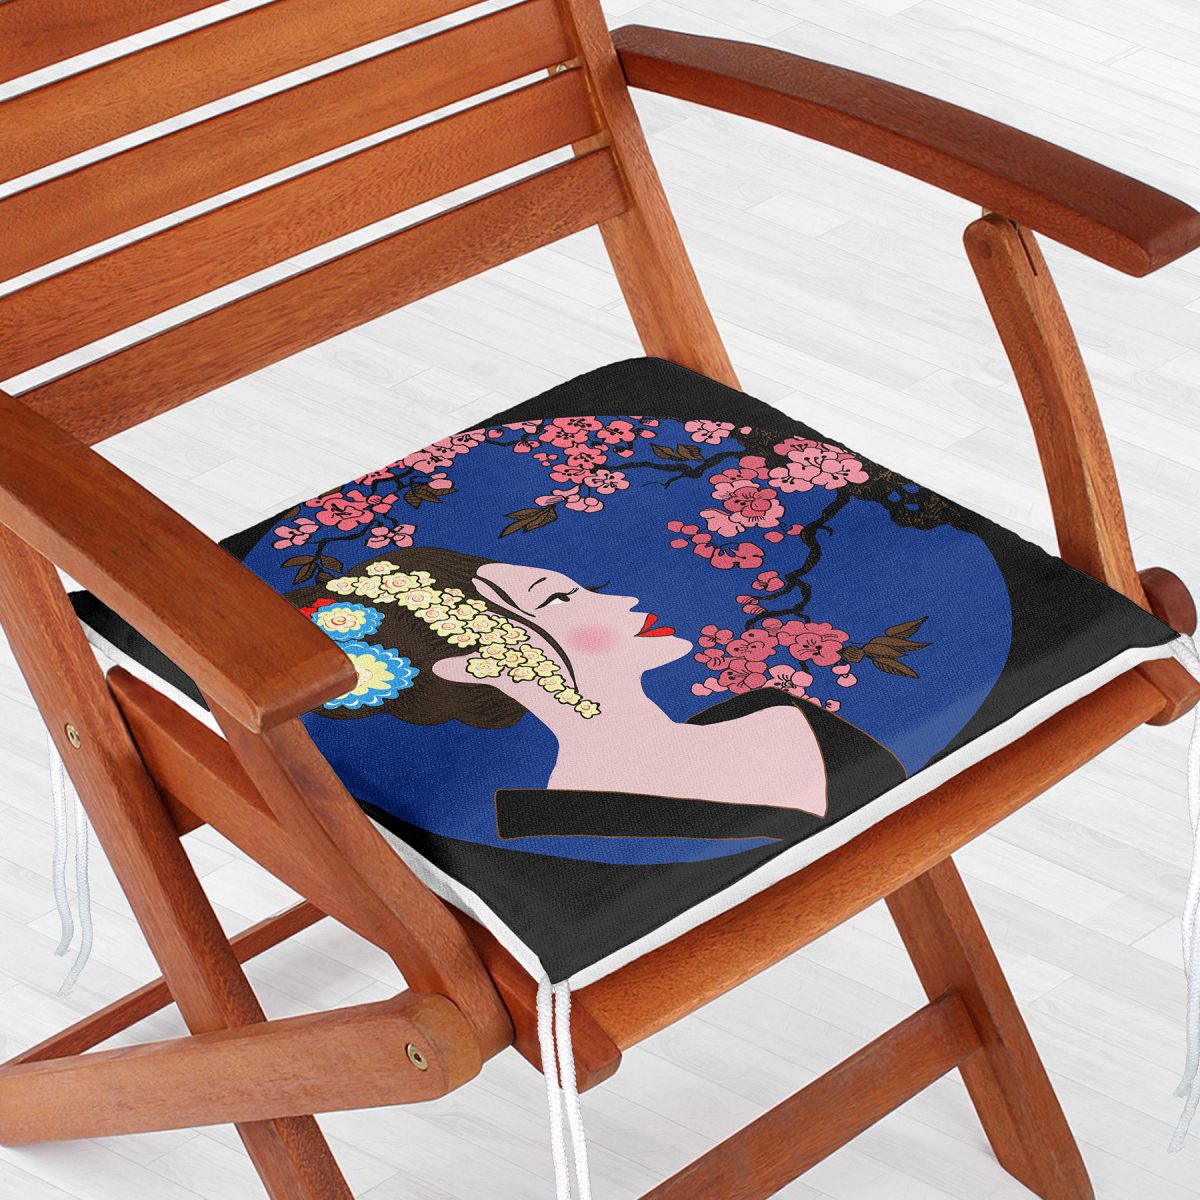 Çiçek Motifli Japon Kız Desenli Dekoratif Fermuarlı Sandalye Minderi Realhomes